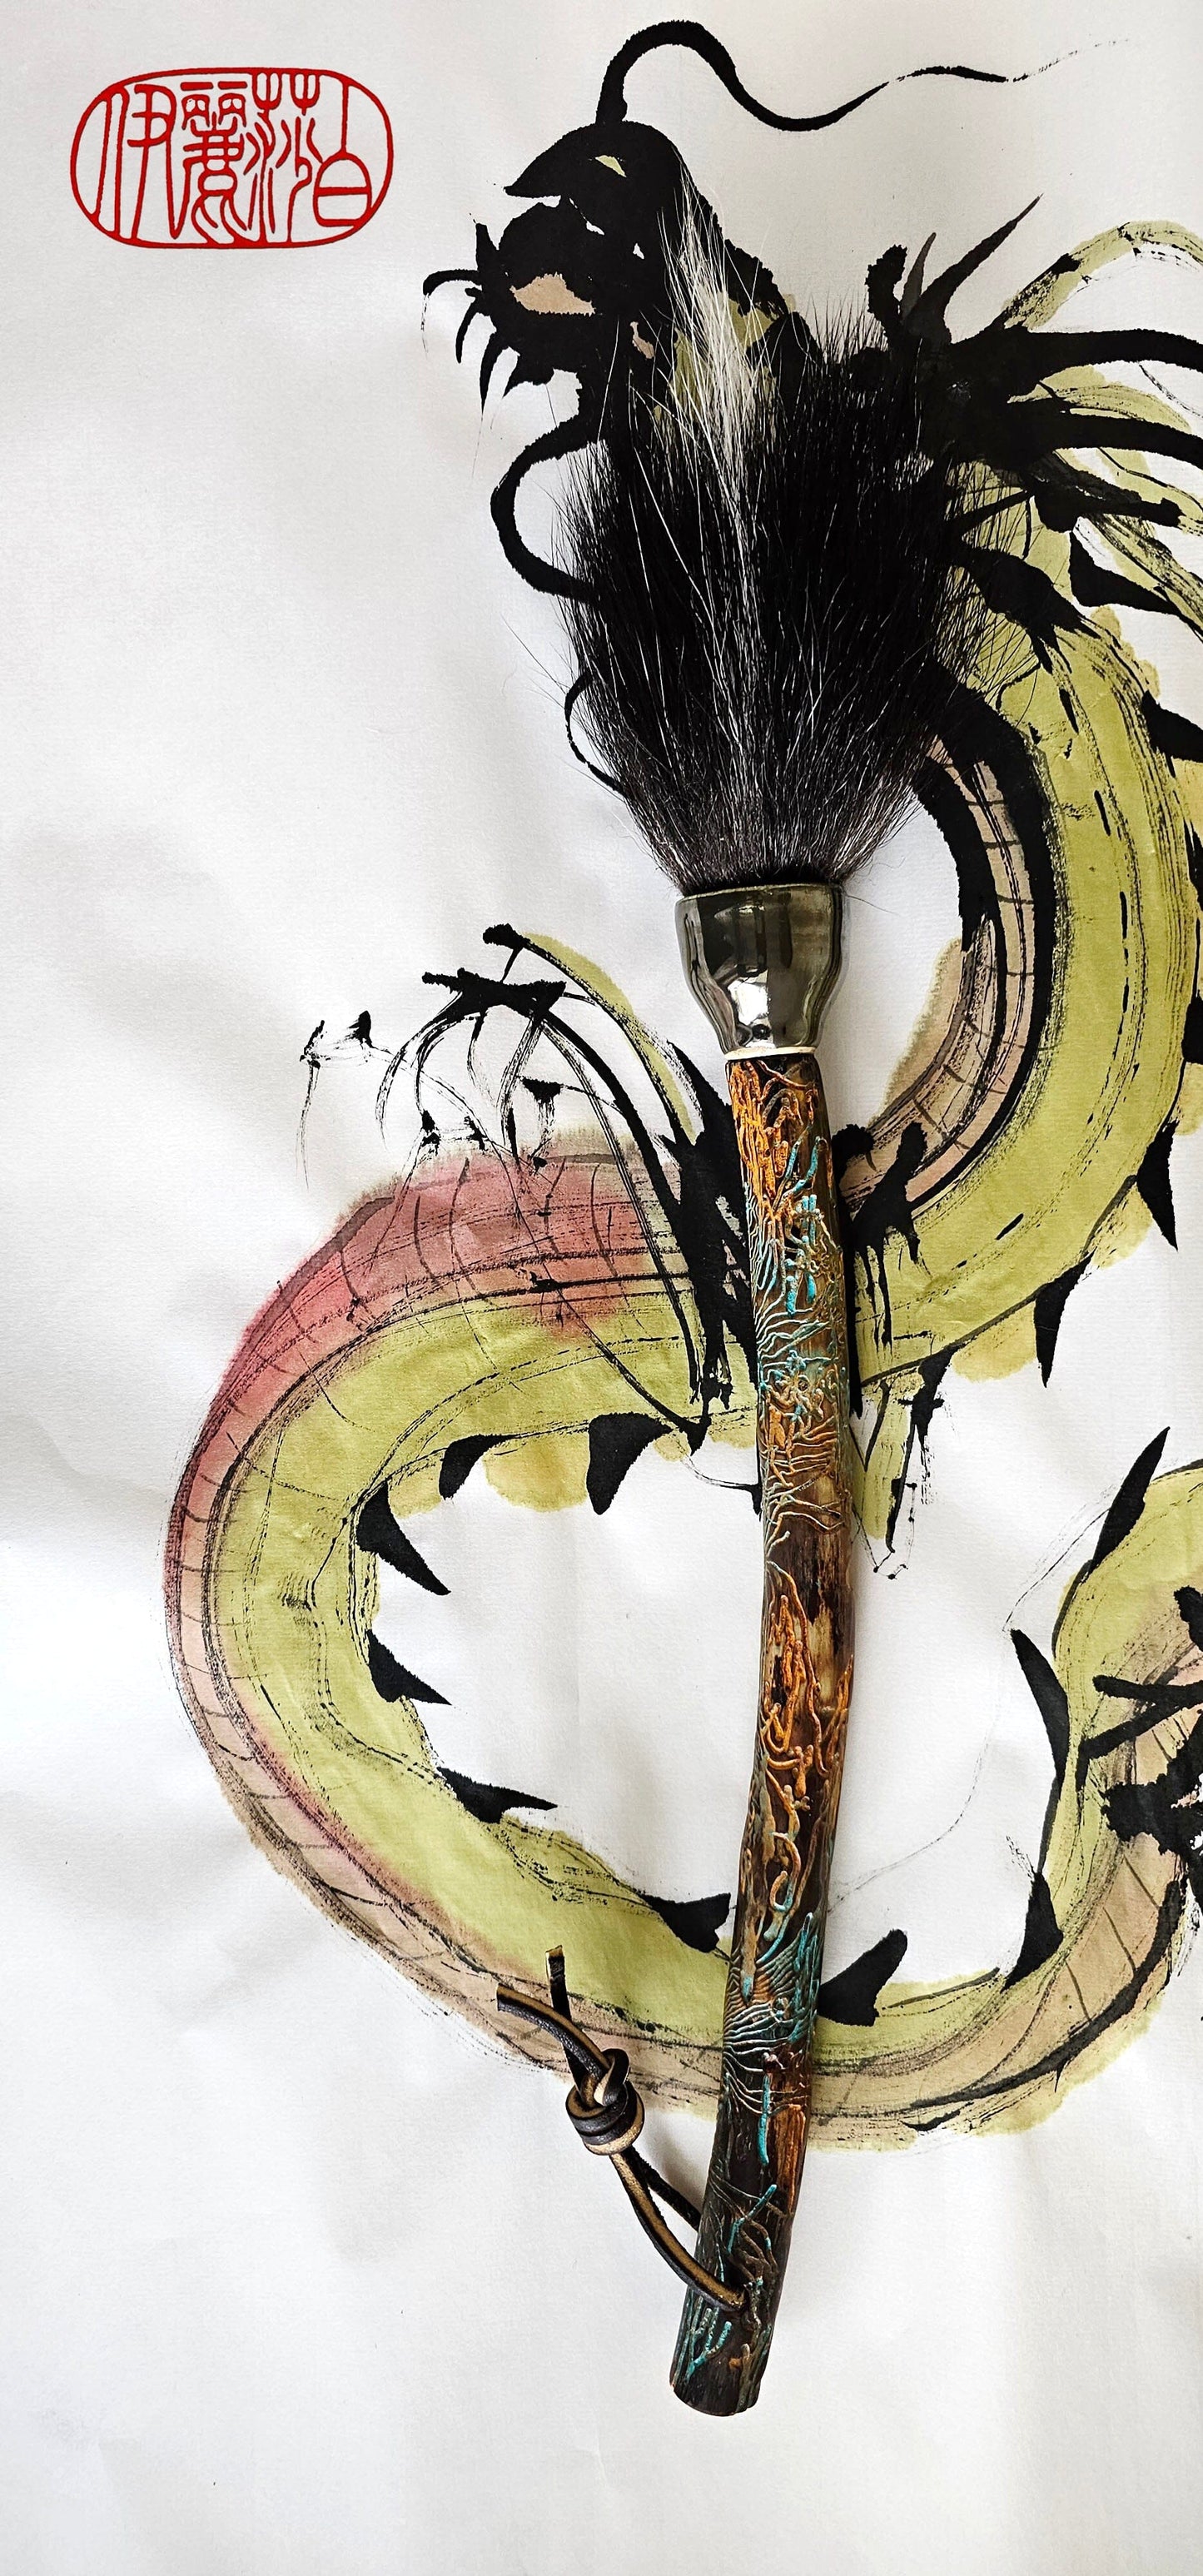 Skunk Sumi-e Paint Brush With Ceramic Ferrule Paintbrush Elizabeth Schowachert Art